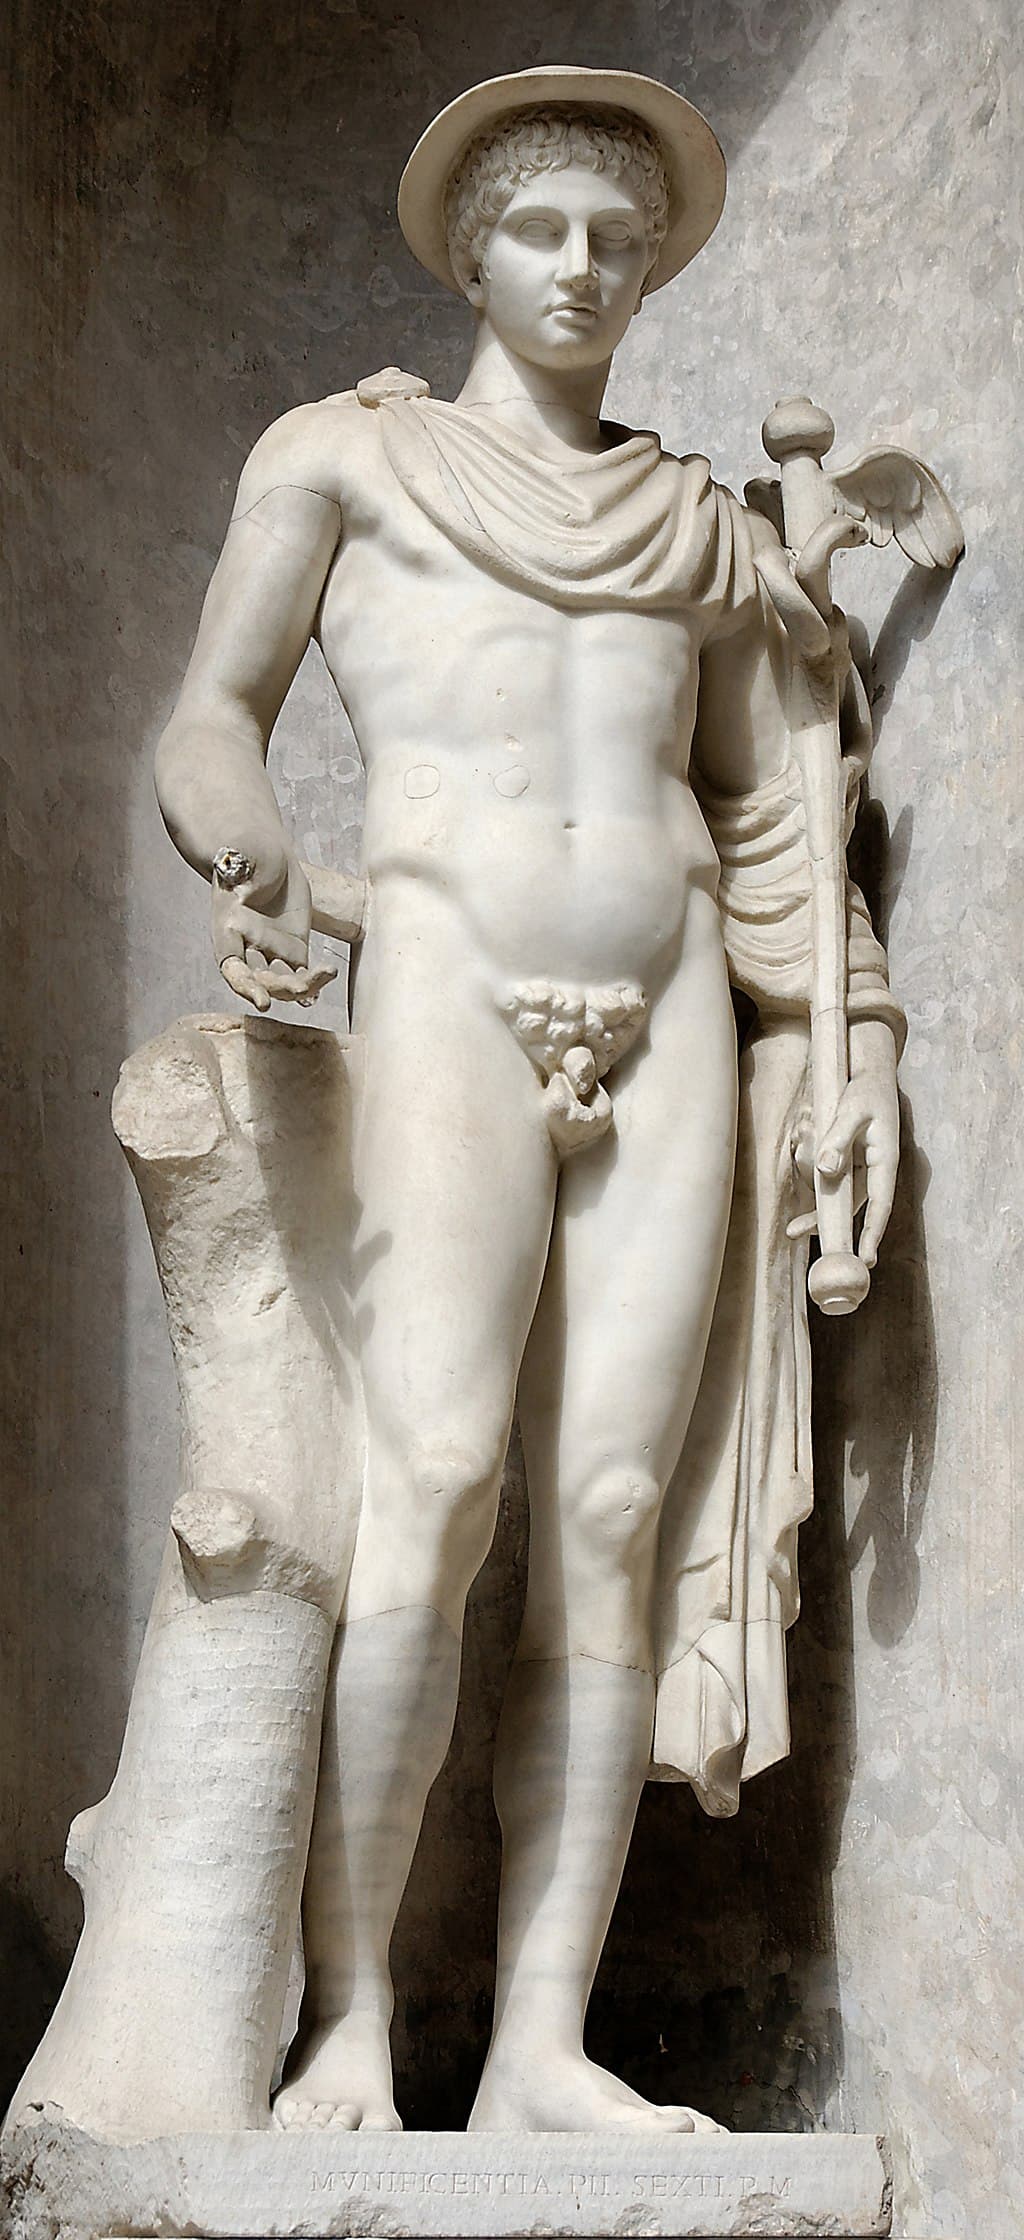 Hermes (Vatican Museums)